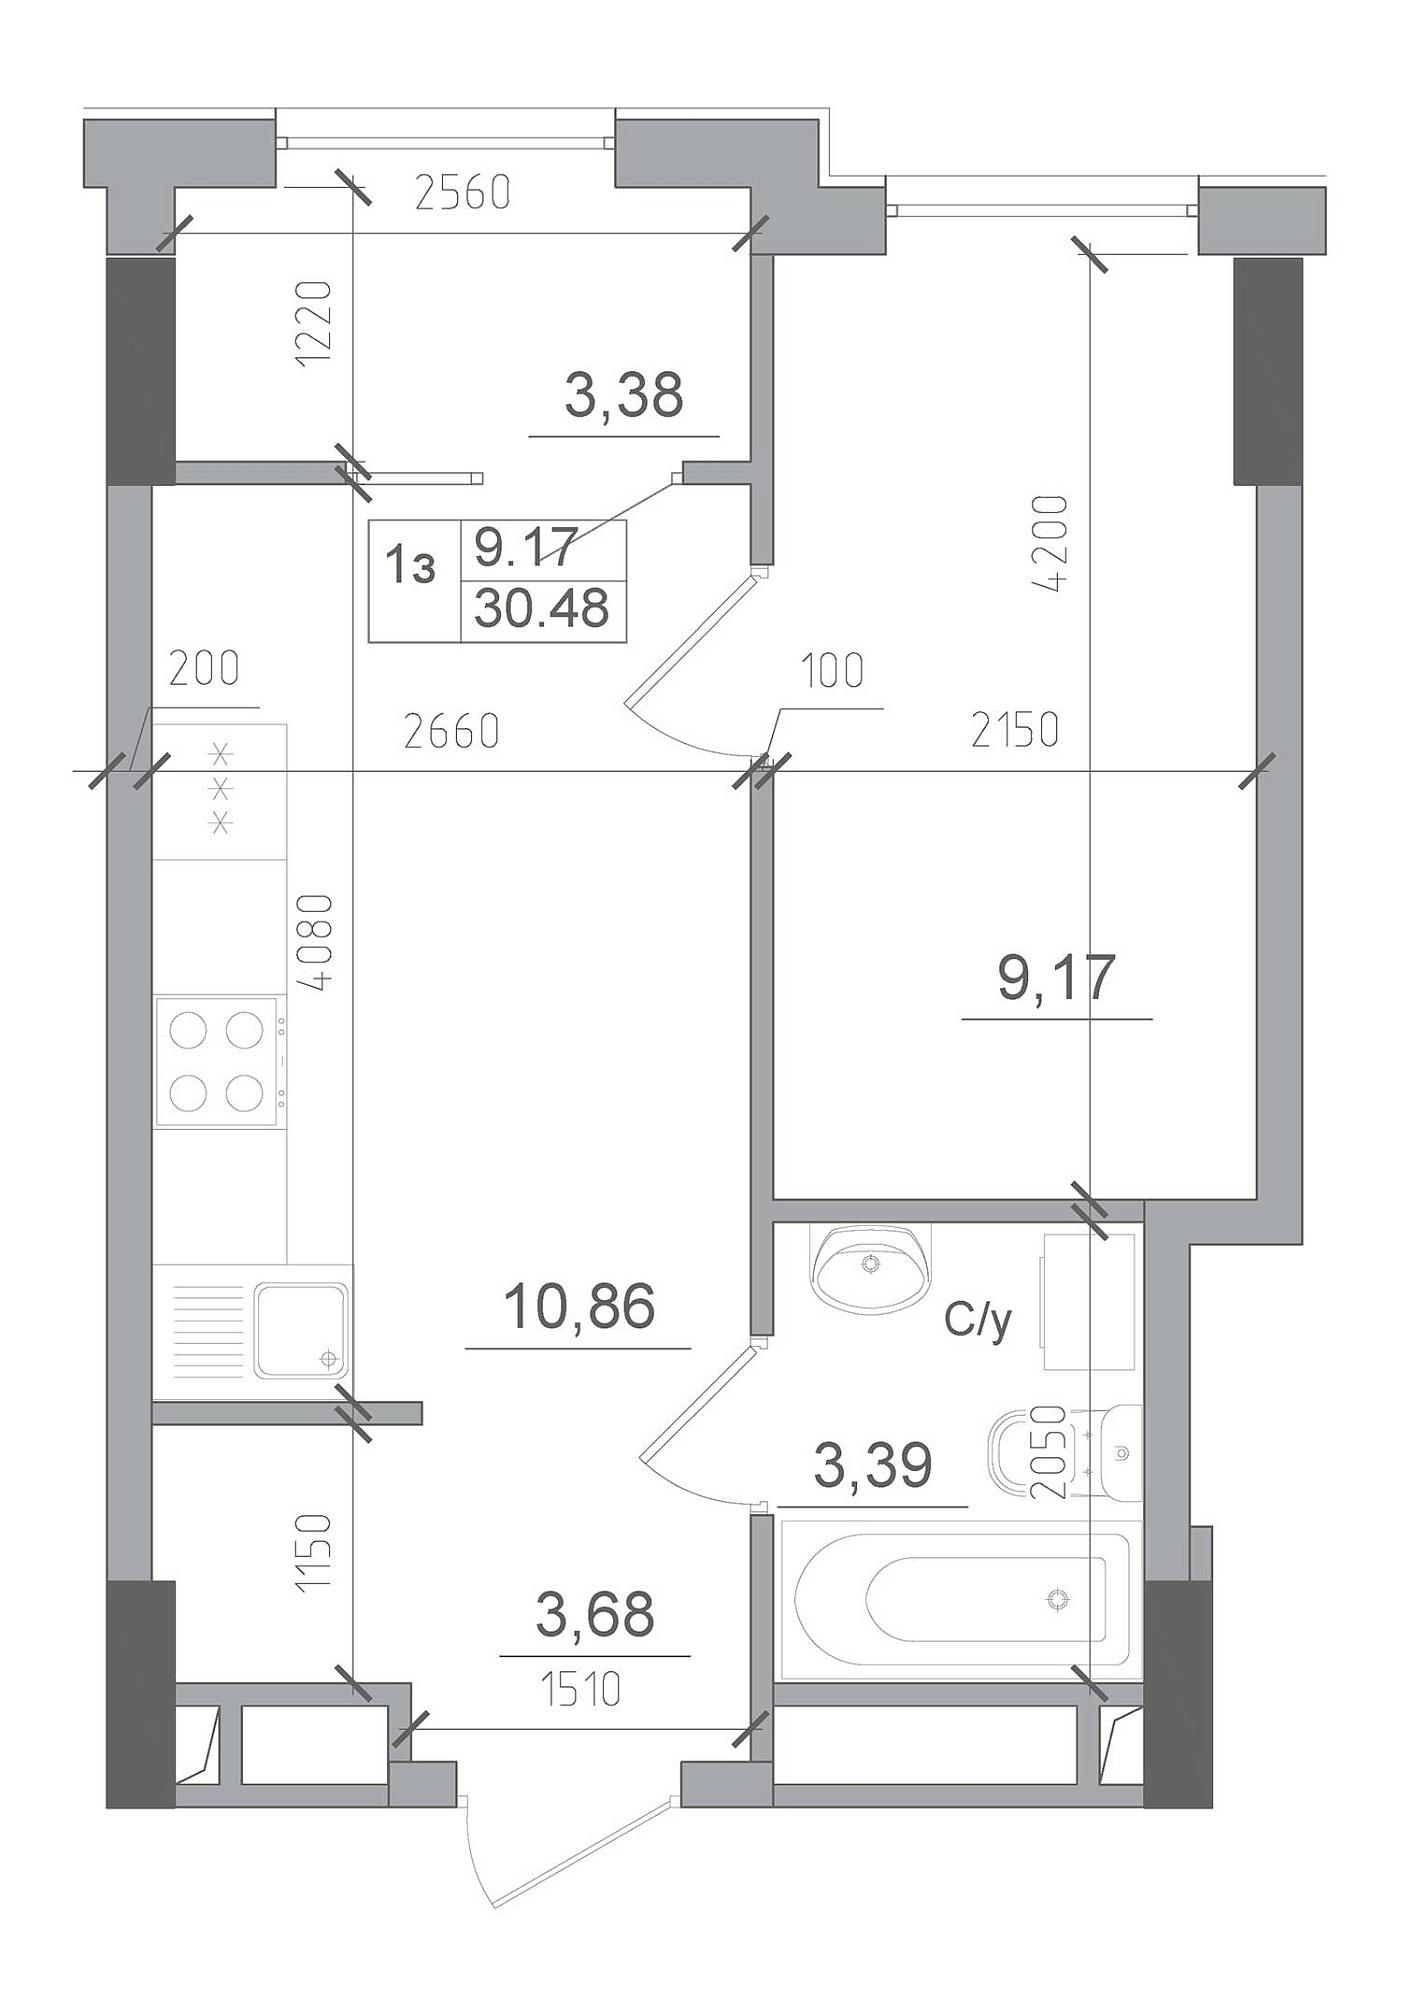 Планировка 1-к квартира площей 30.48м2, AB-22-01/00013.